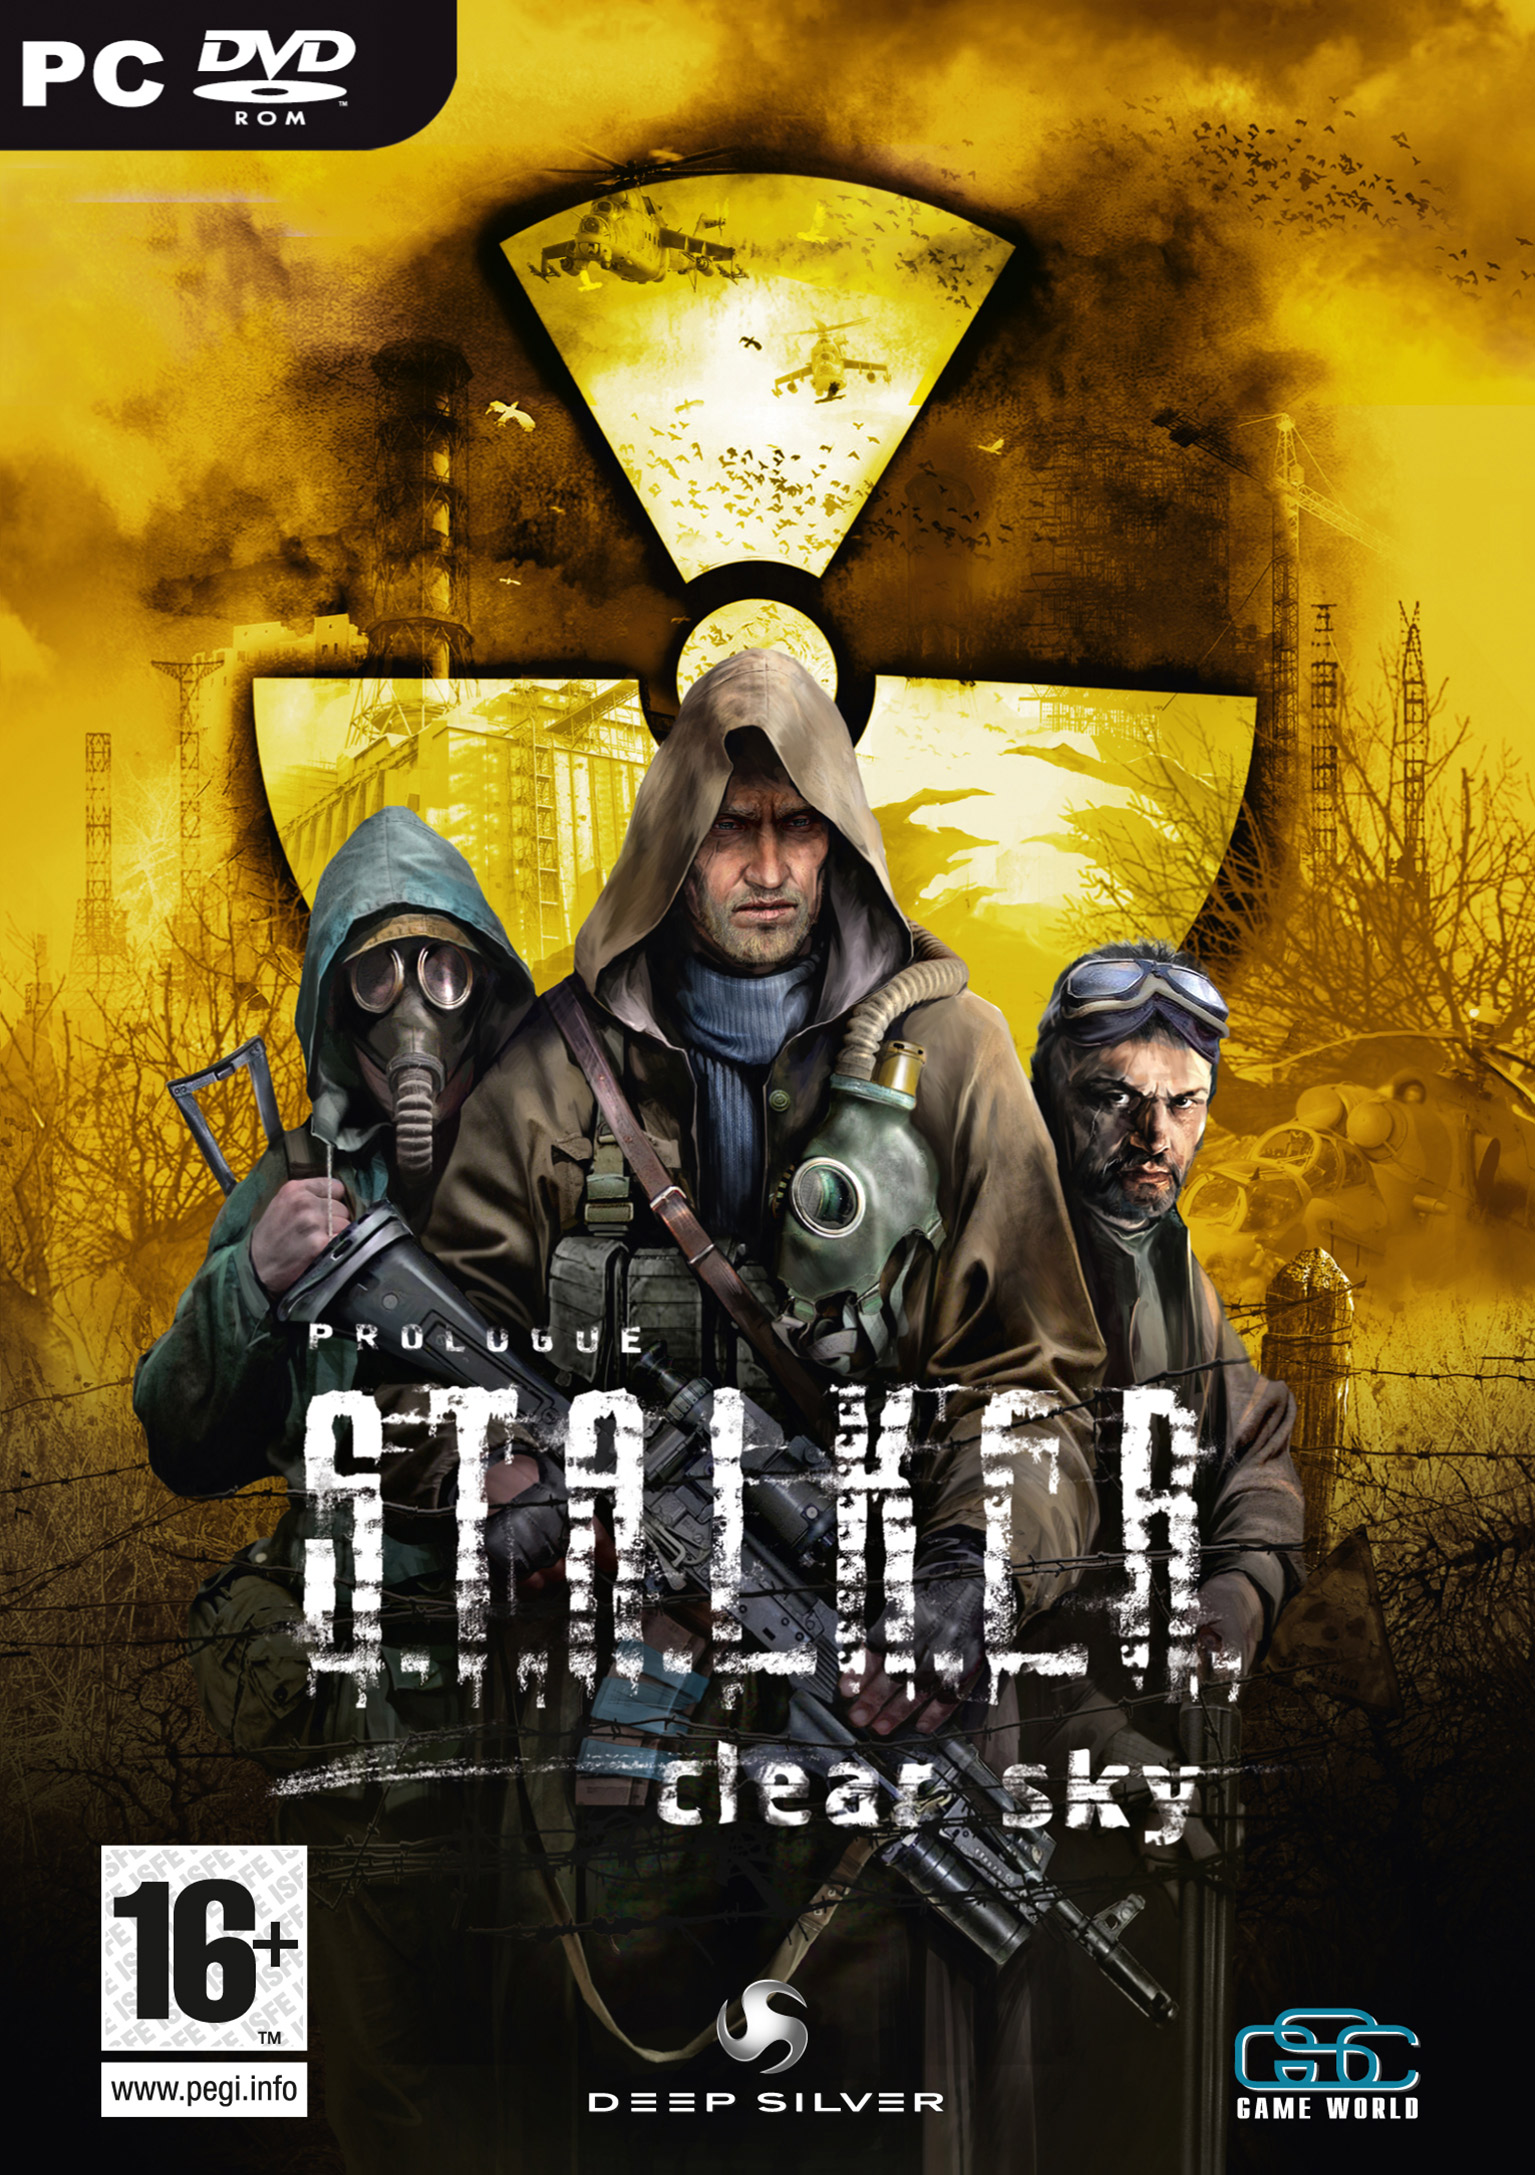 S.T.A.L.K.E.R.: Clear Sky - predn DVD obal 2